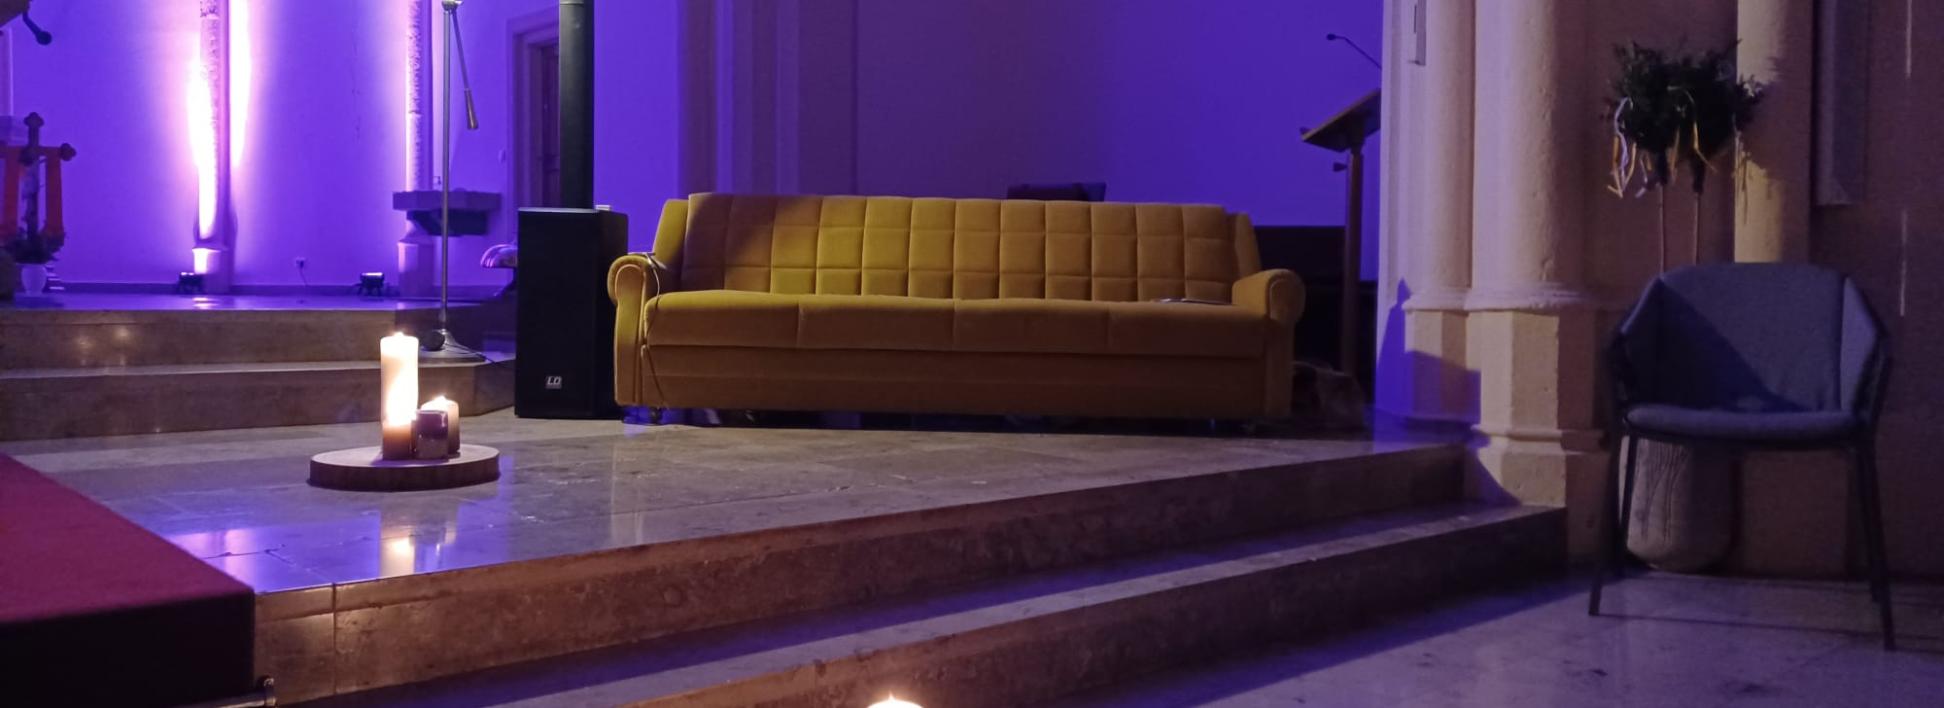 gelbes sofa in der kirche